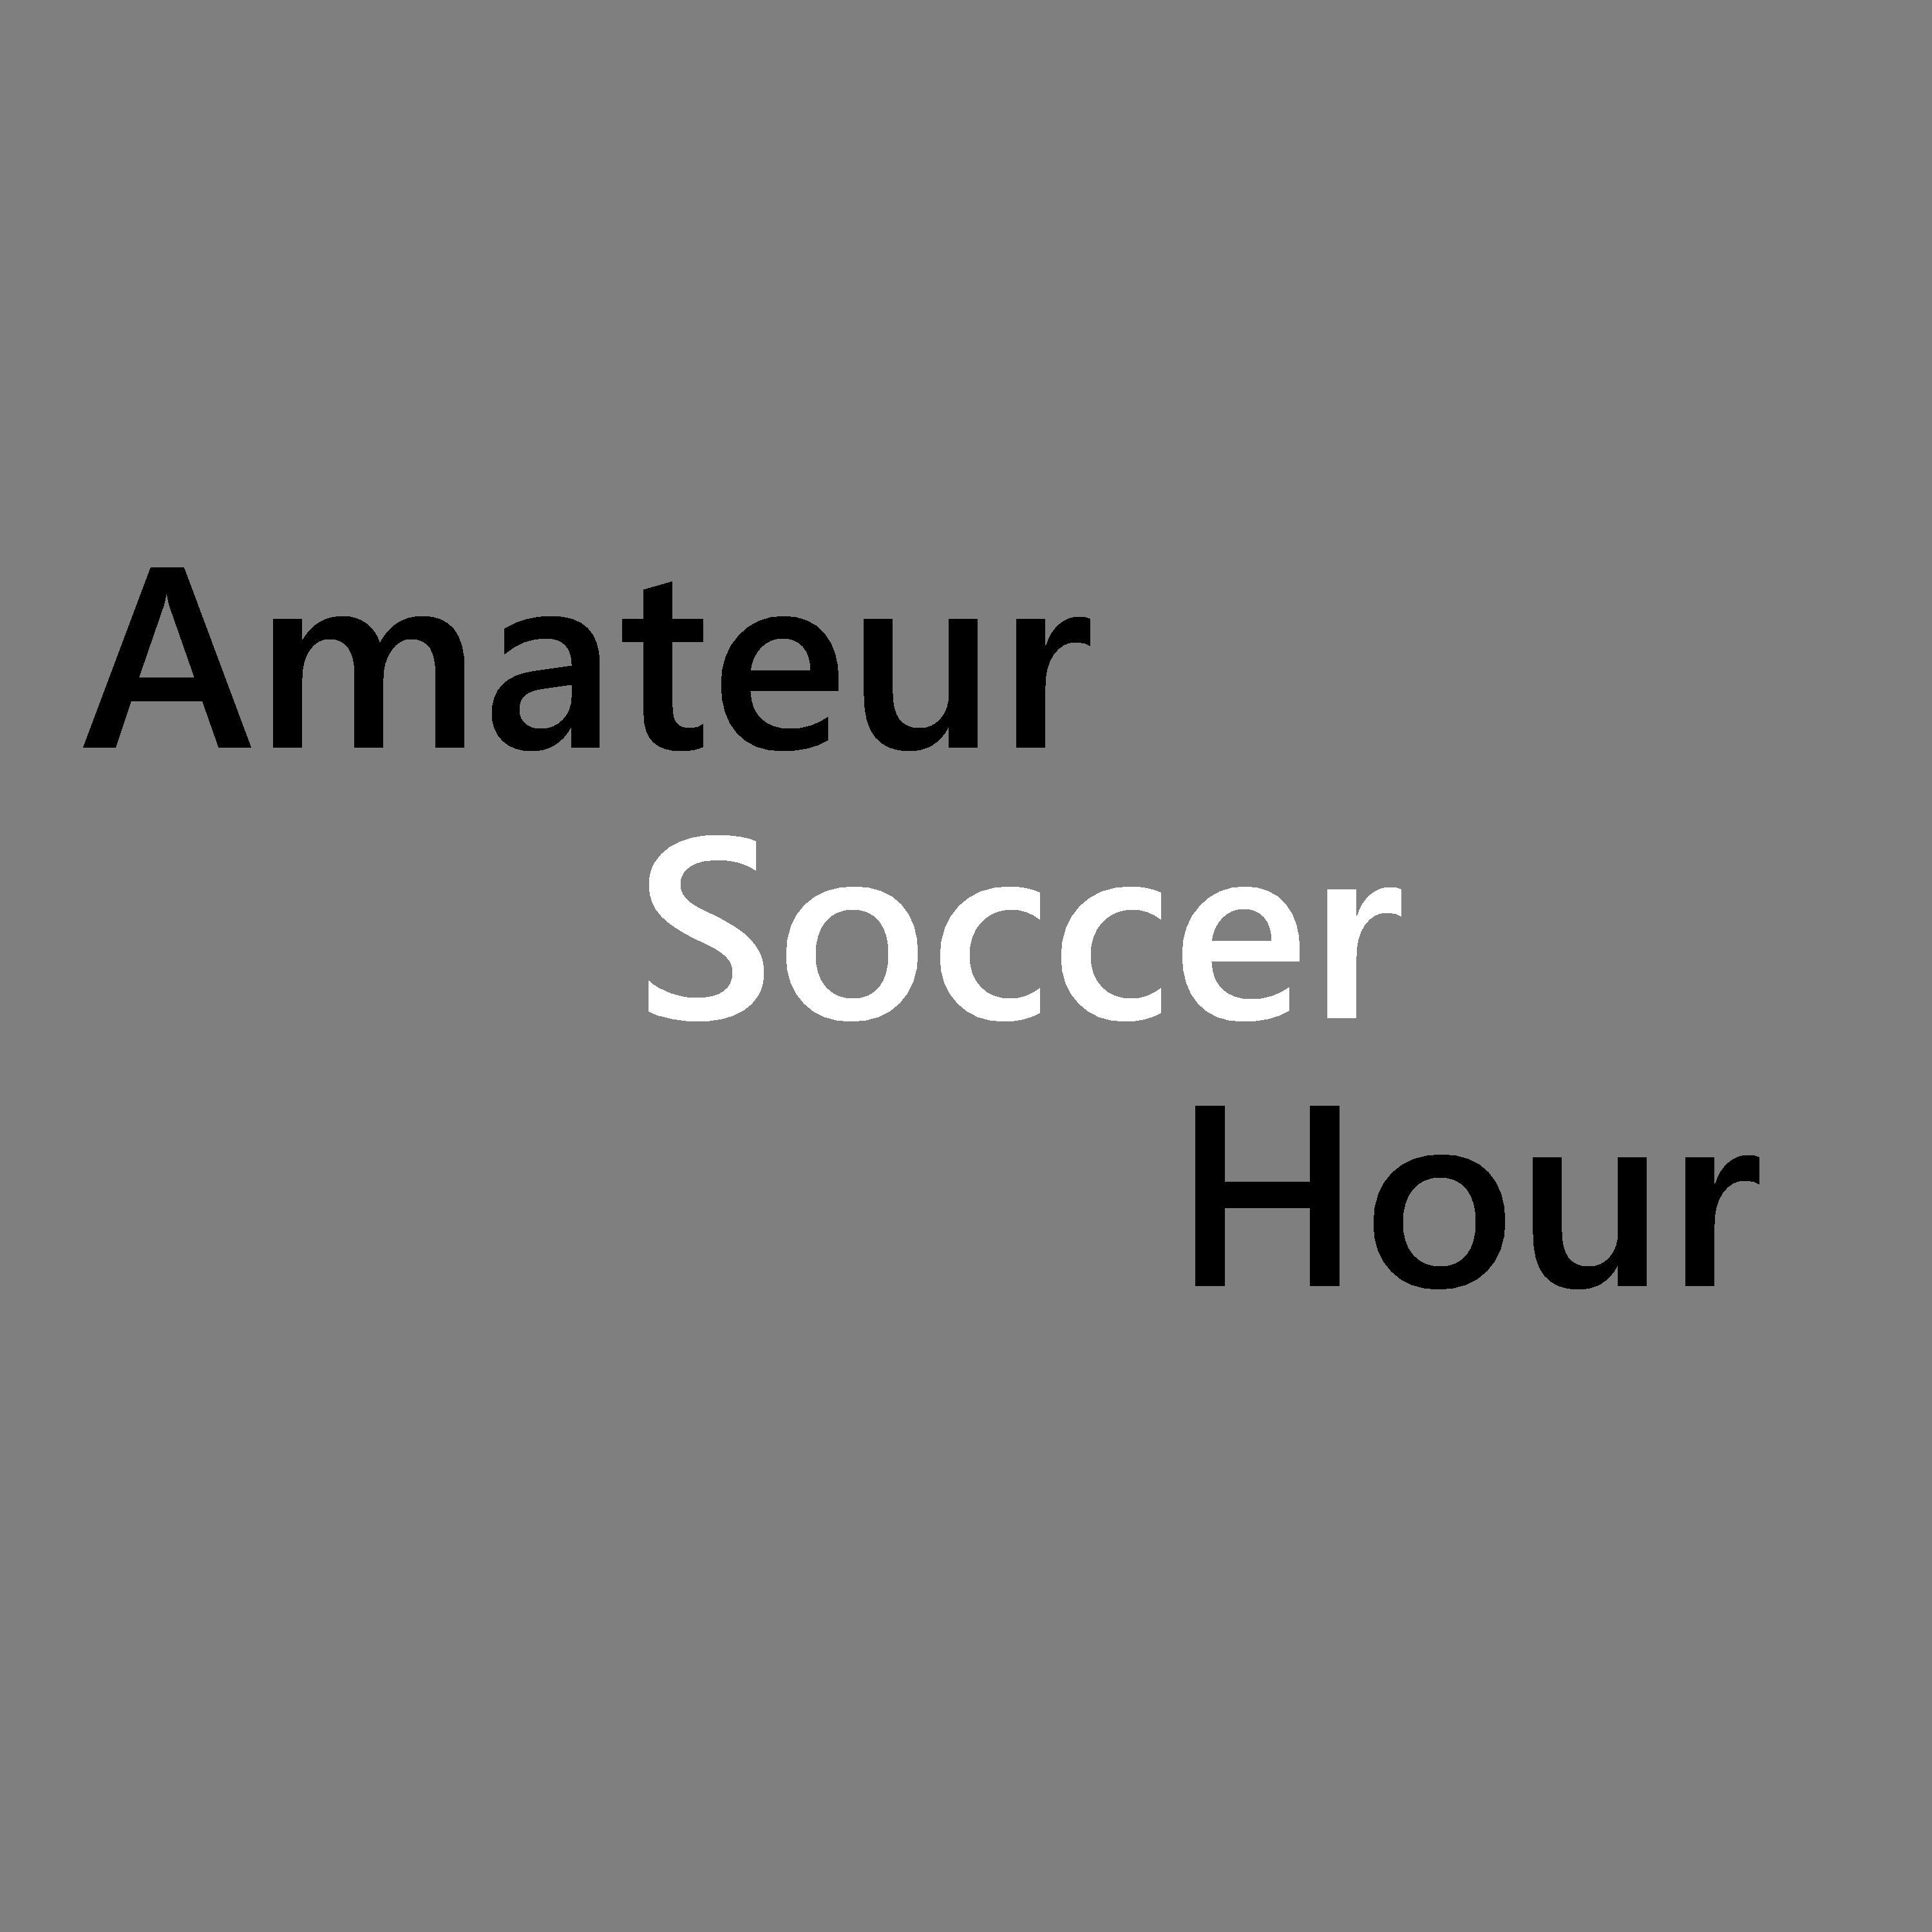 Amateur Soccer Hour